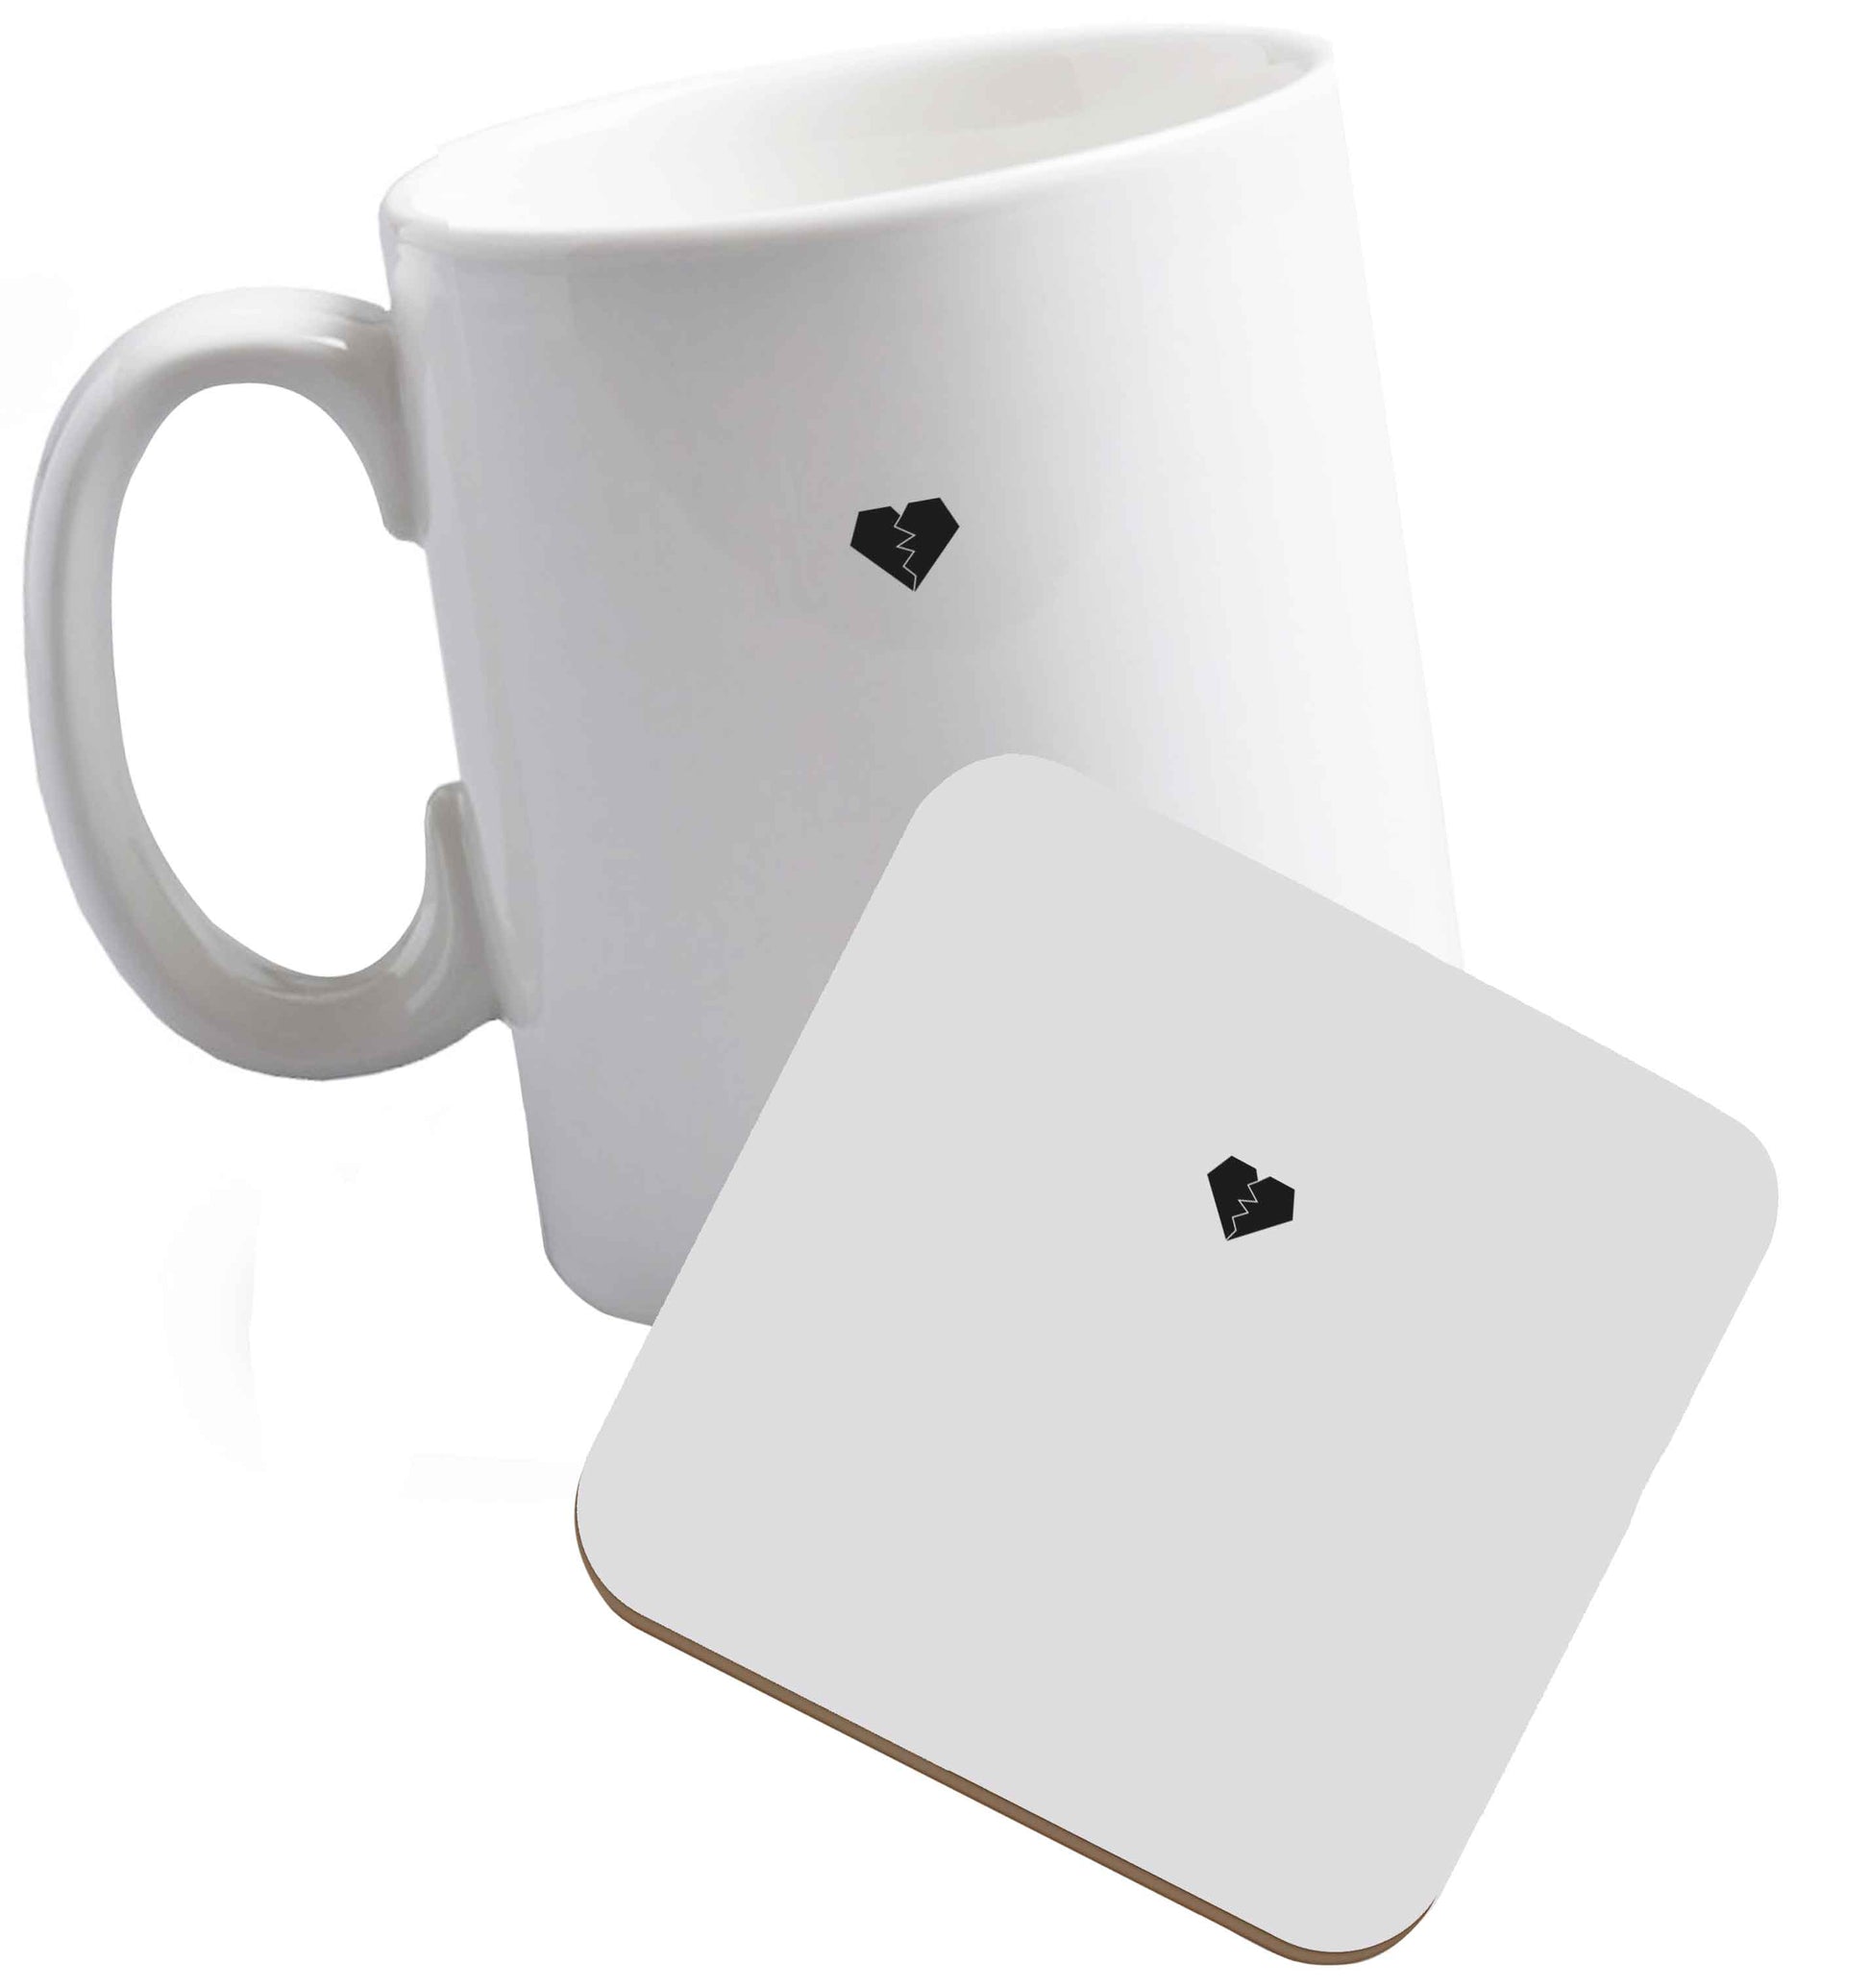 10 oz Tiny broken heart ceramic mug and coaster set right handed